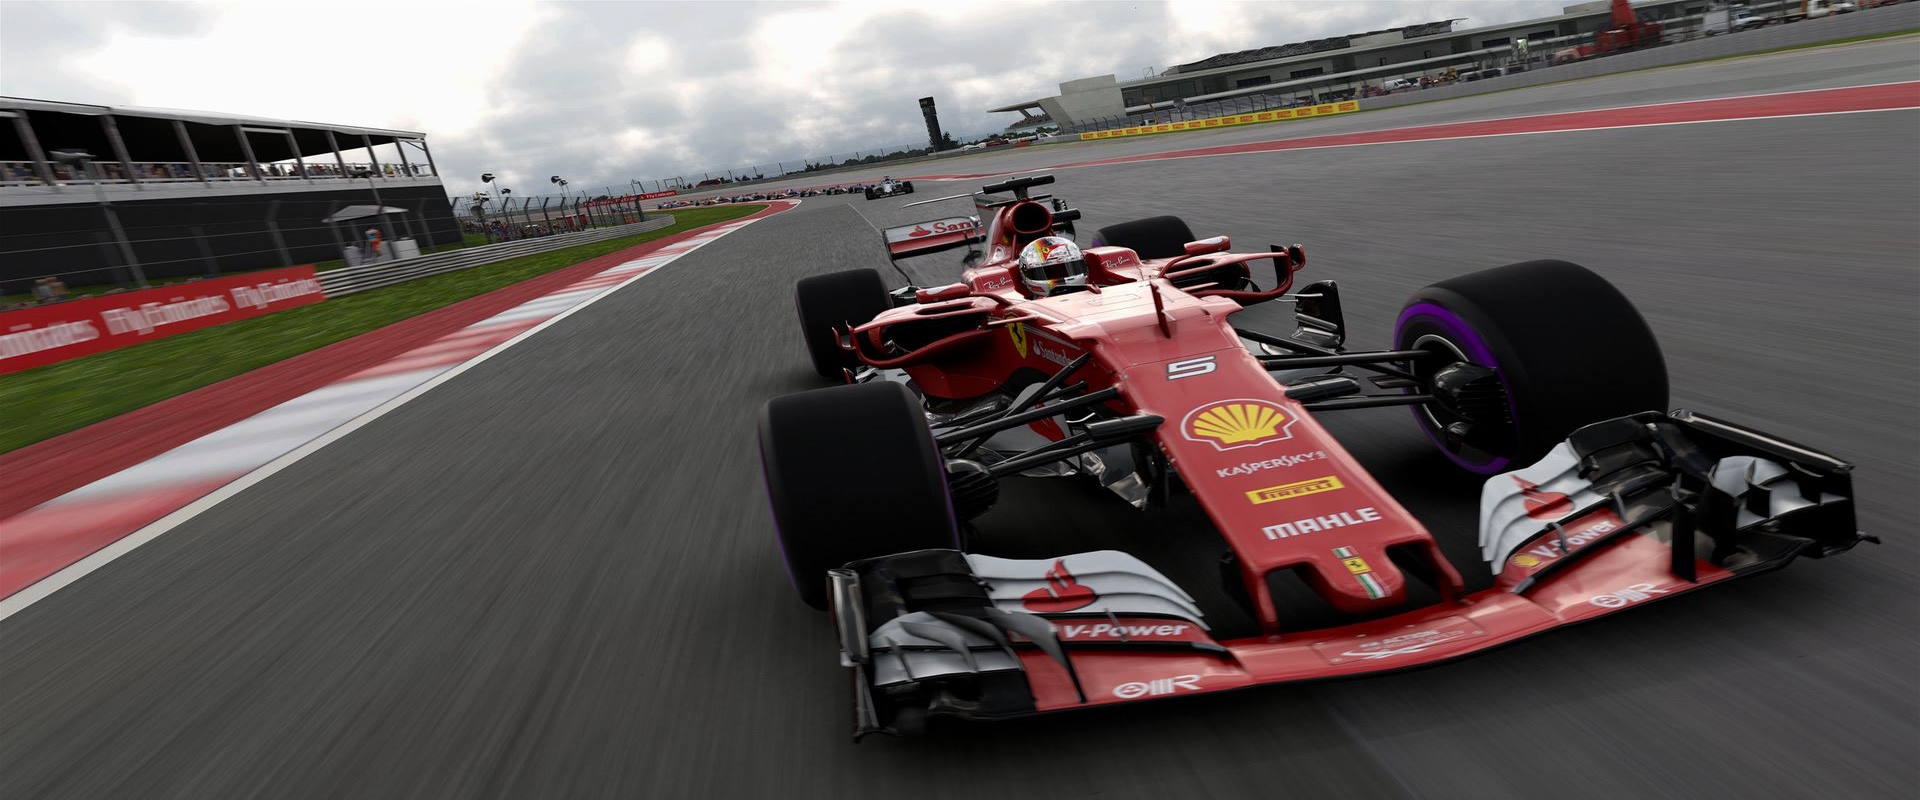 F1 Esports Series: Csak az utolsó körben dőlt el a PC-s selejtező, este pedig PS4-en folytatódik